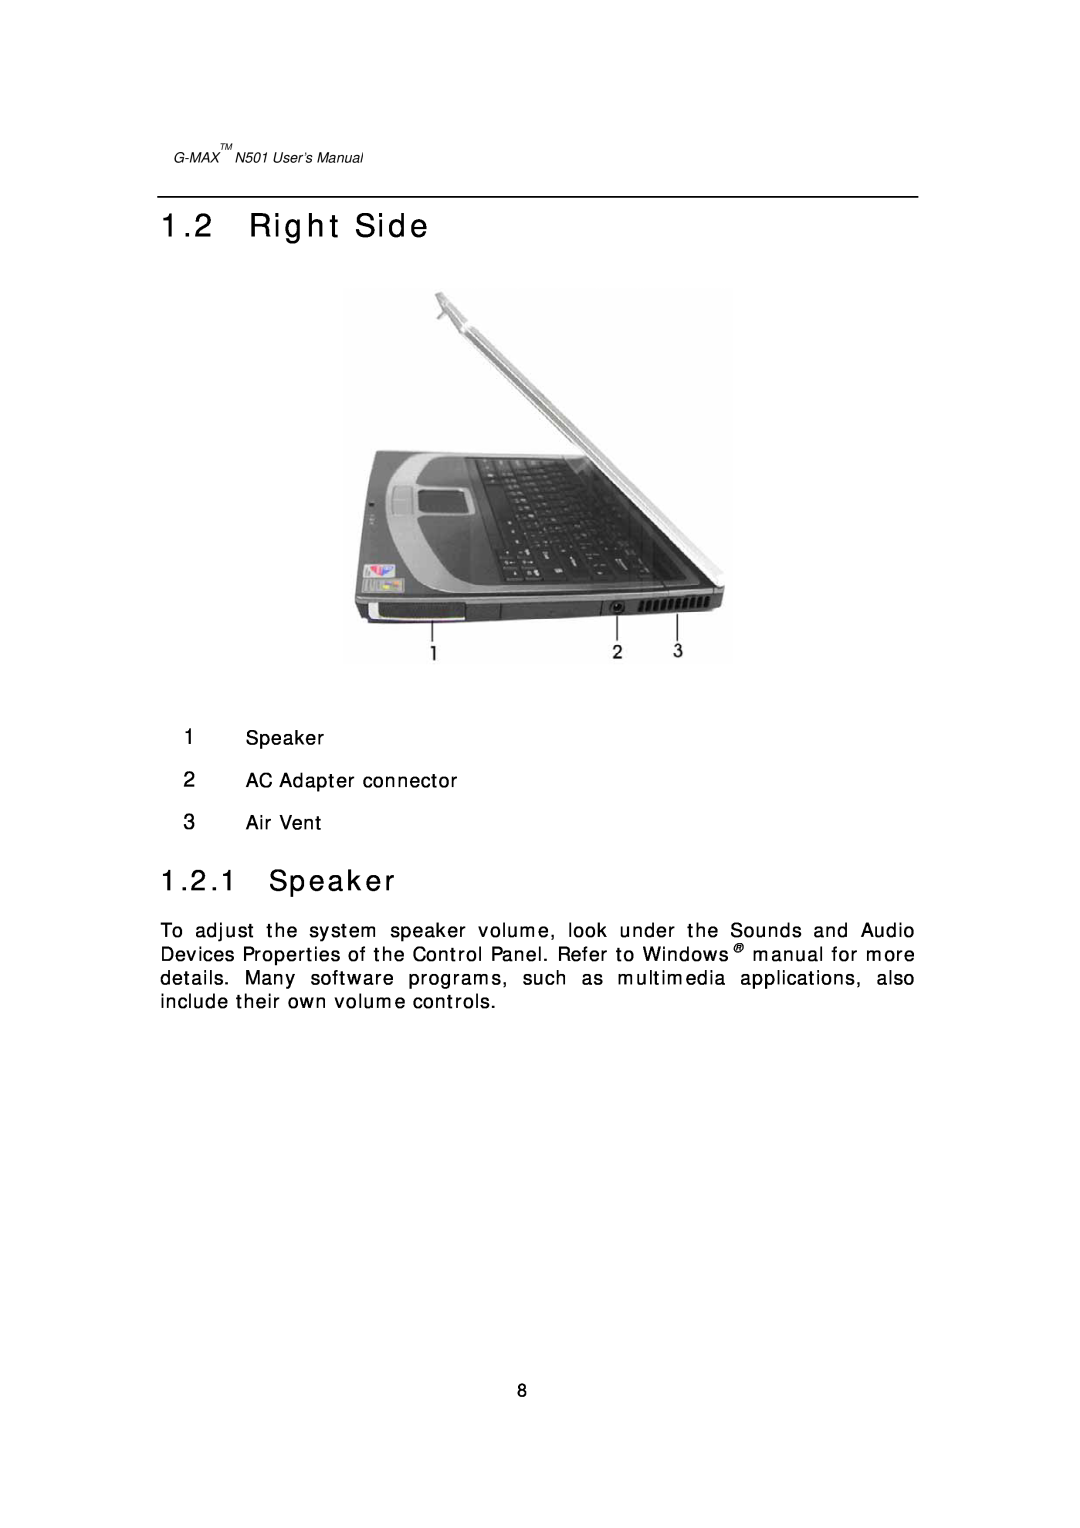 Gigabyte G-MAX N501 user manual Right Side, Speaker, G-MAXTM N501 User’s Manual 